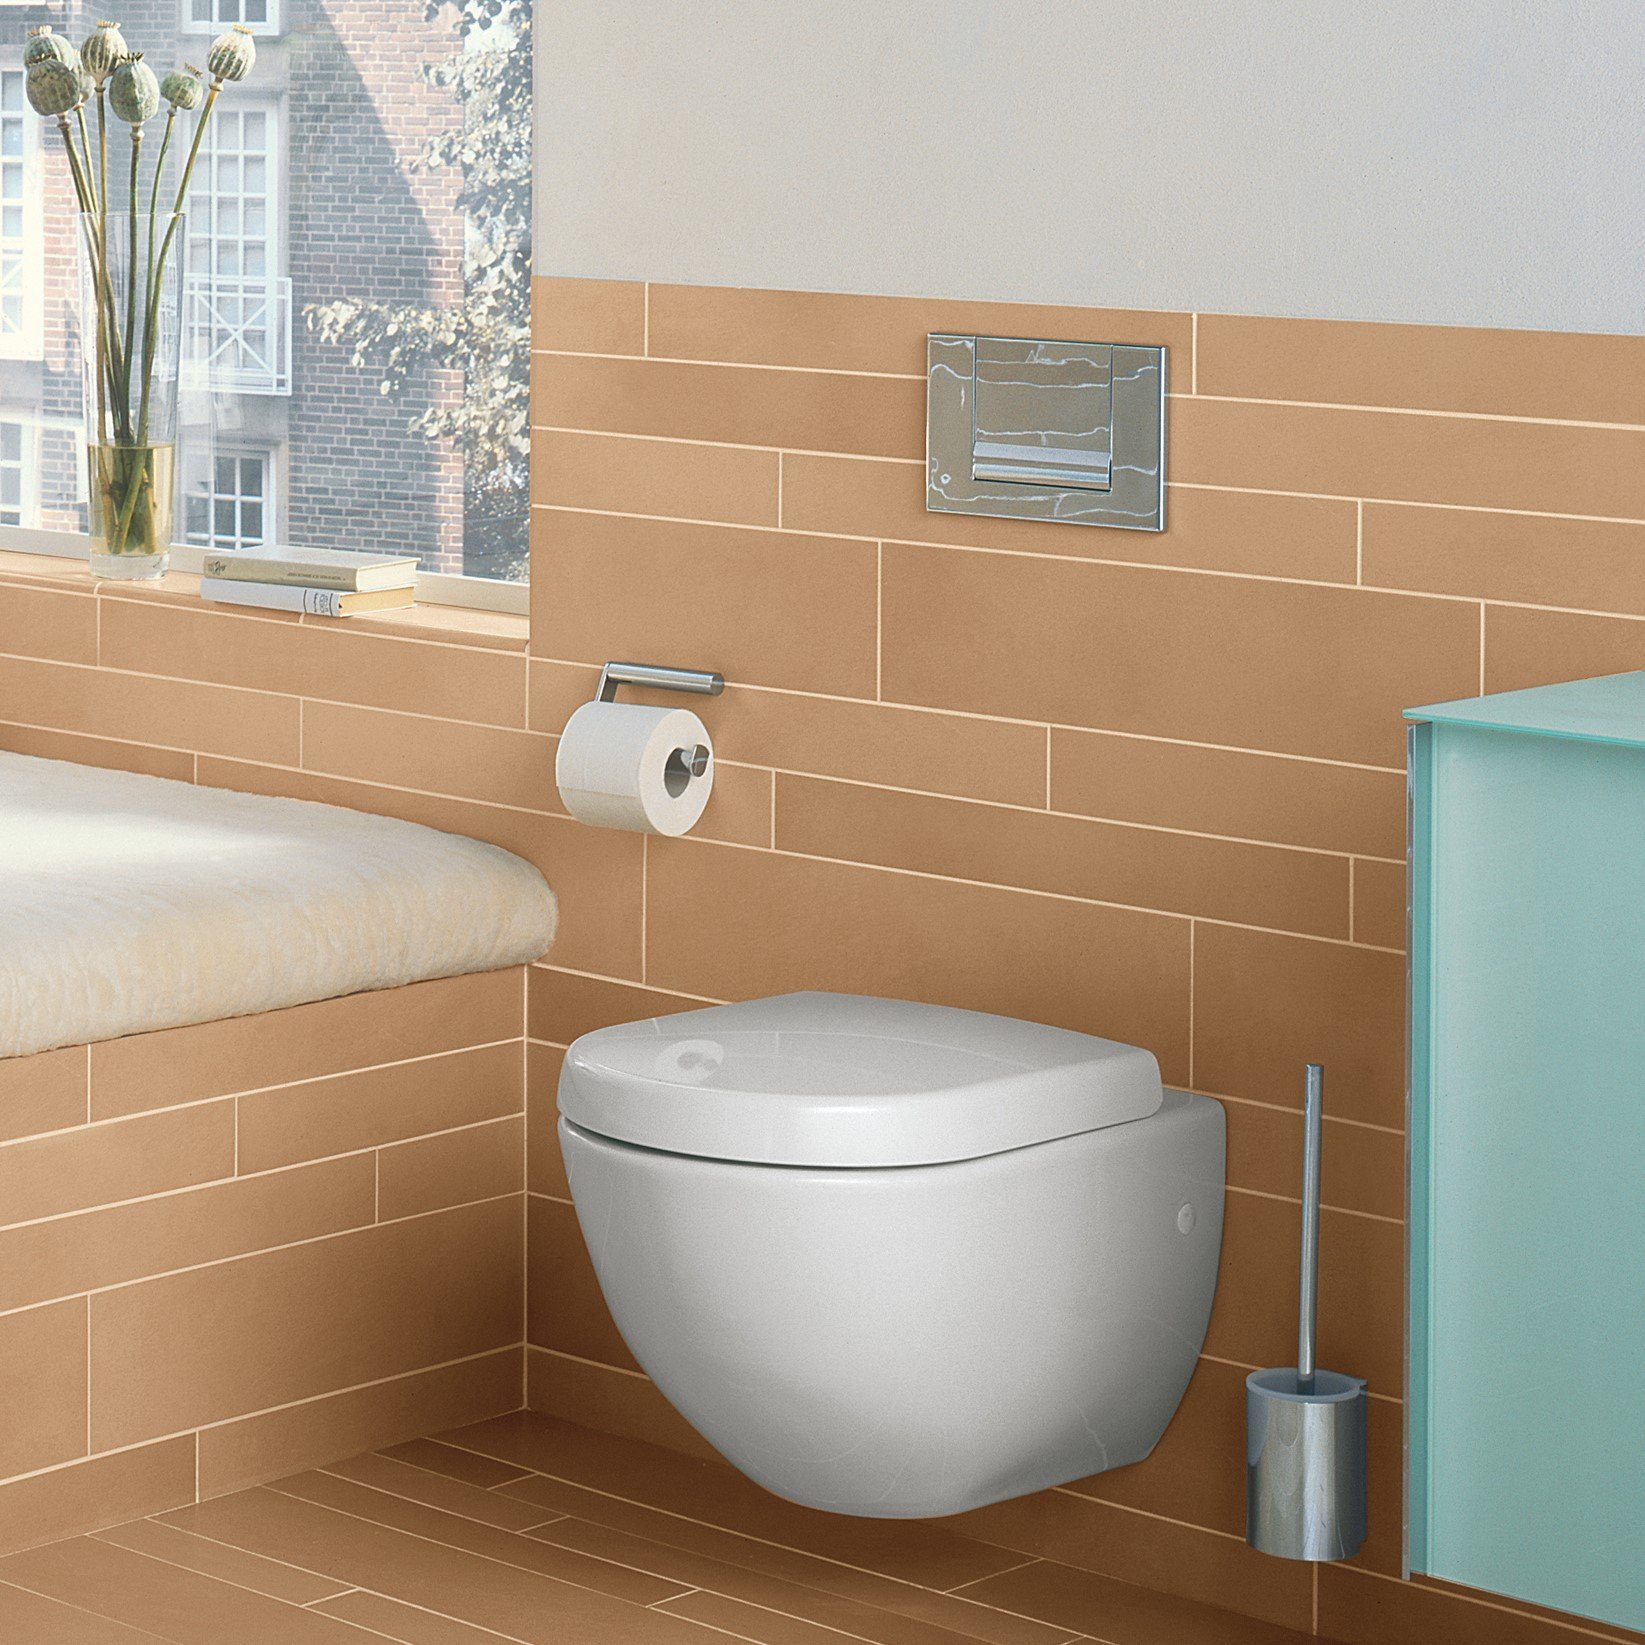 Metall, WC-Reinigungsbürste (Vormontiert), Toilettenbürstengarnitur aus chrom/weiß Plan, mit Keuco WC-Bürste